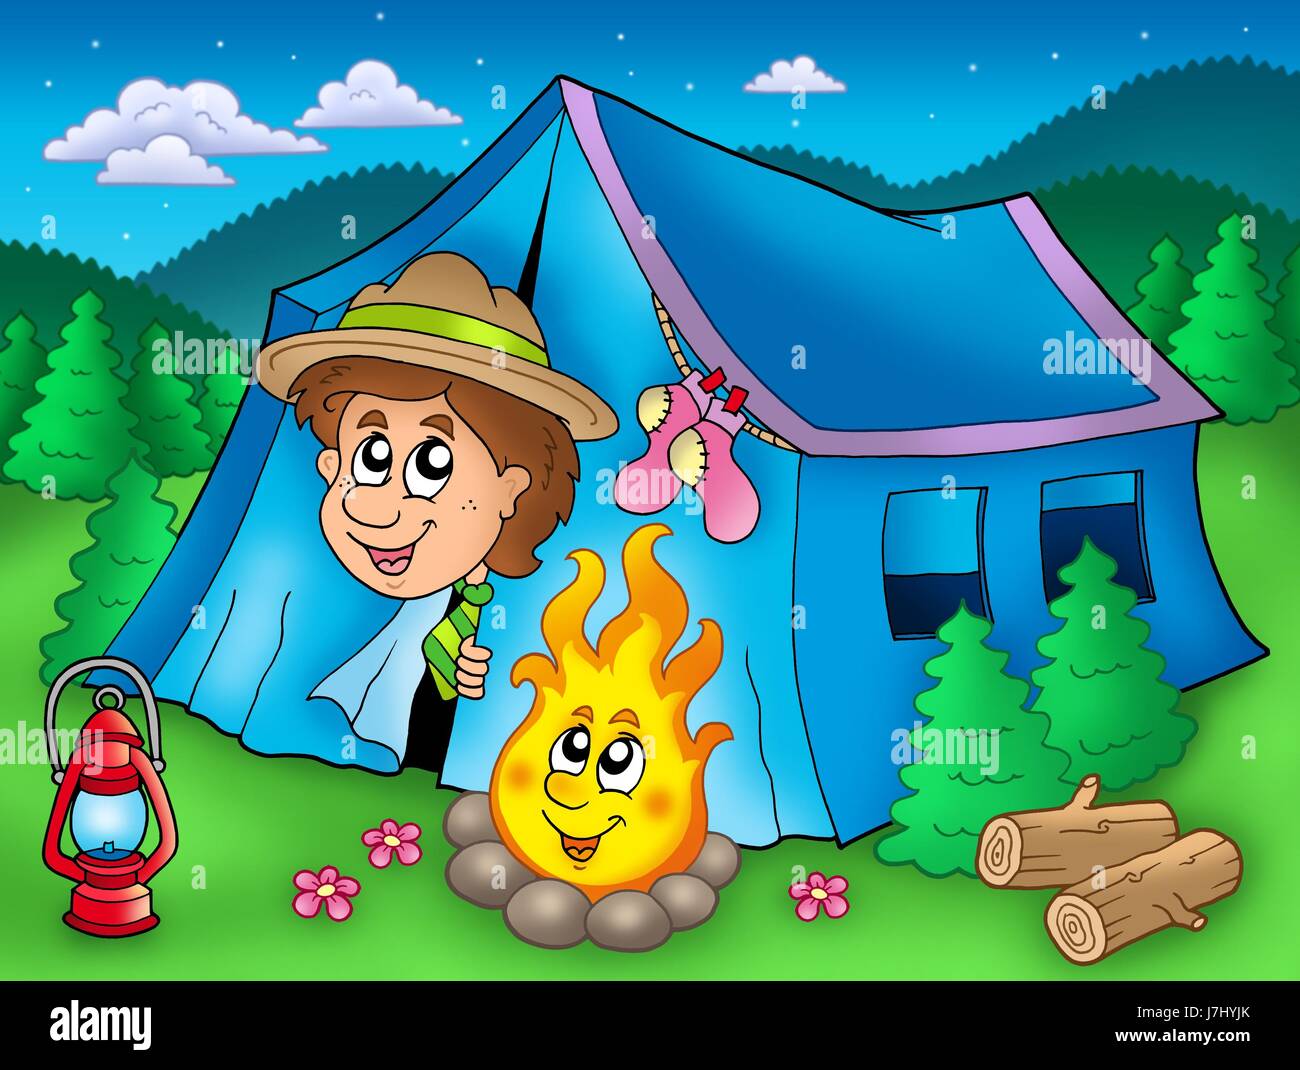 Tente de camping camp scout camp de tentes scouts les humains les êtres humains personnes folk Banque D'Images